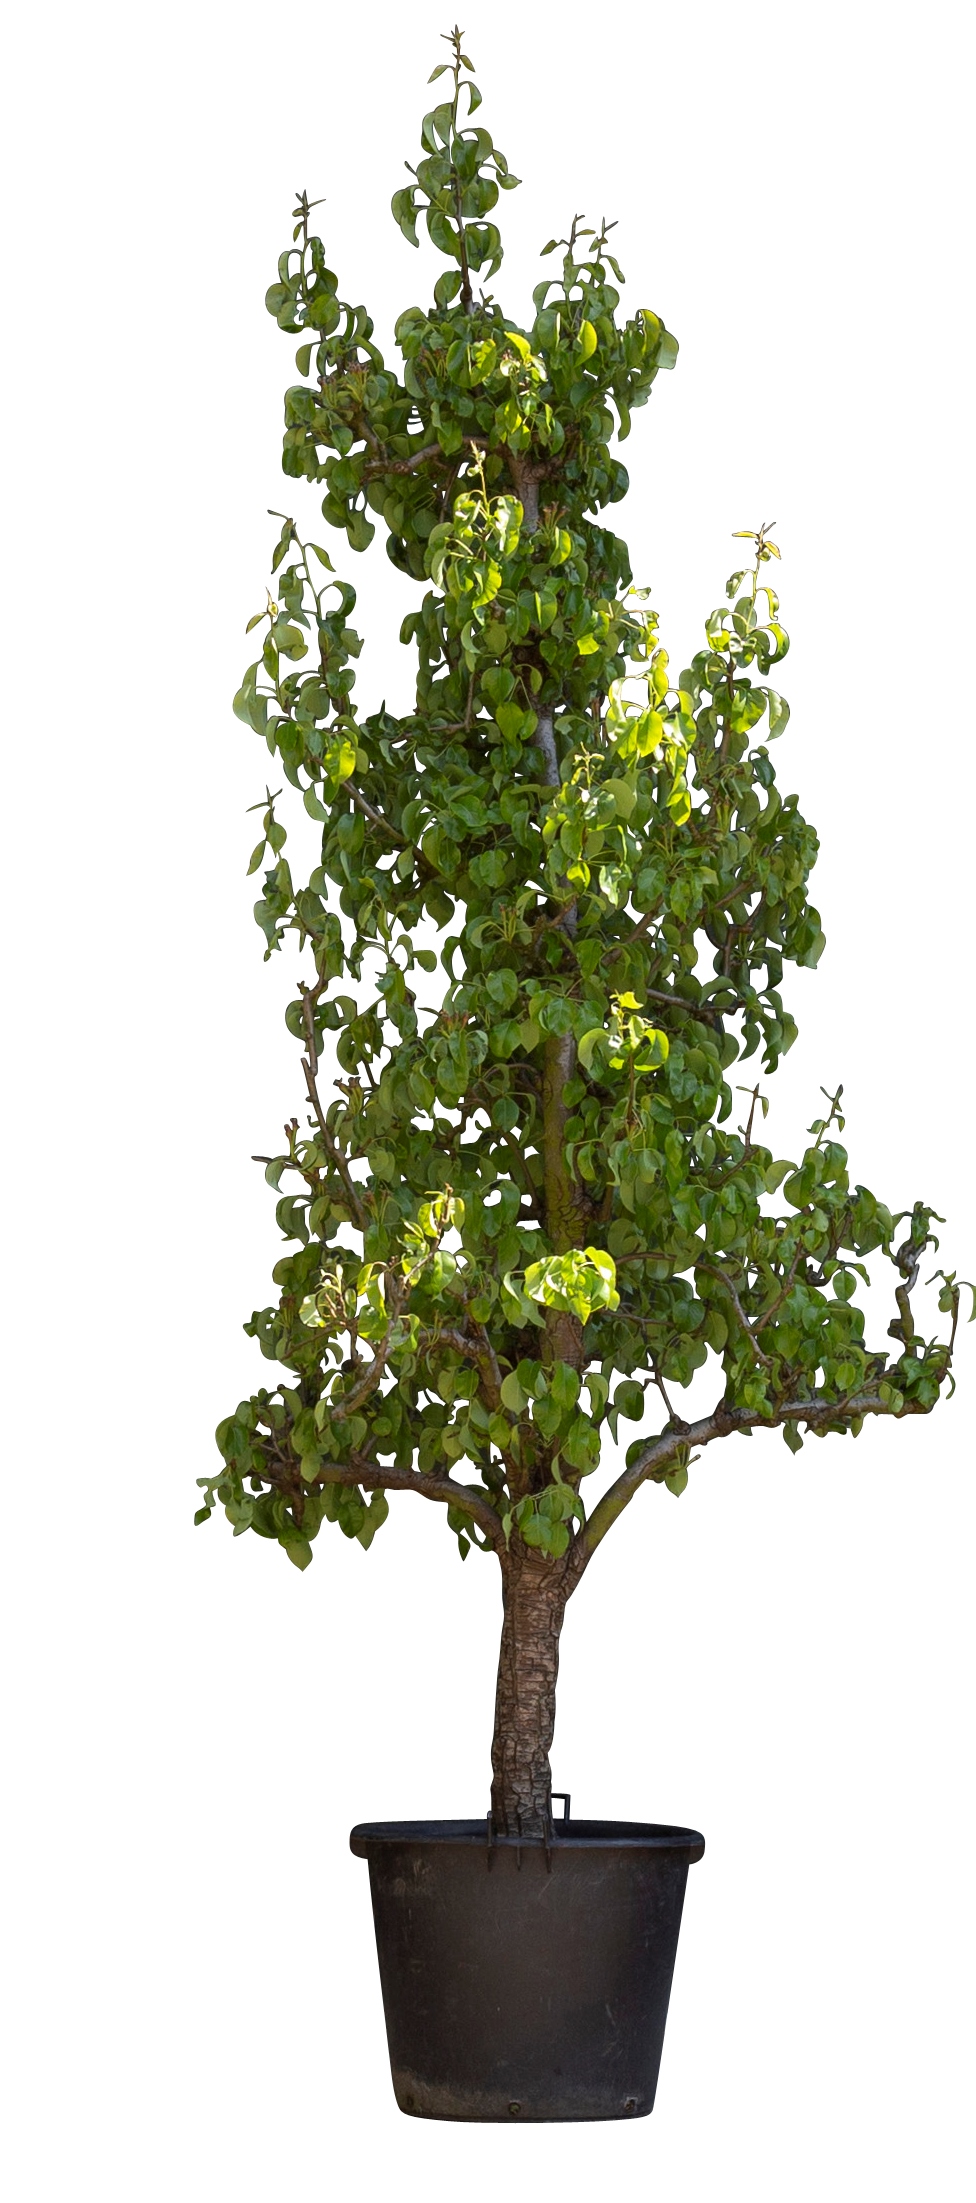 Oude perenboom 'Conference' 16 - 18 cm stamomtrek 200 - 250 cm totaalhoogte